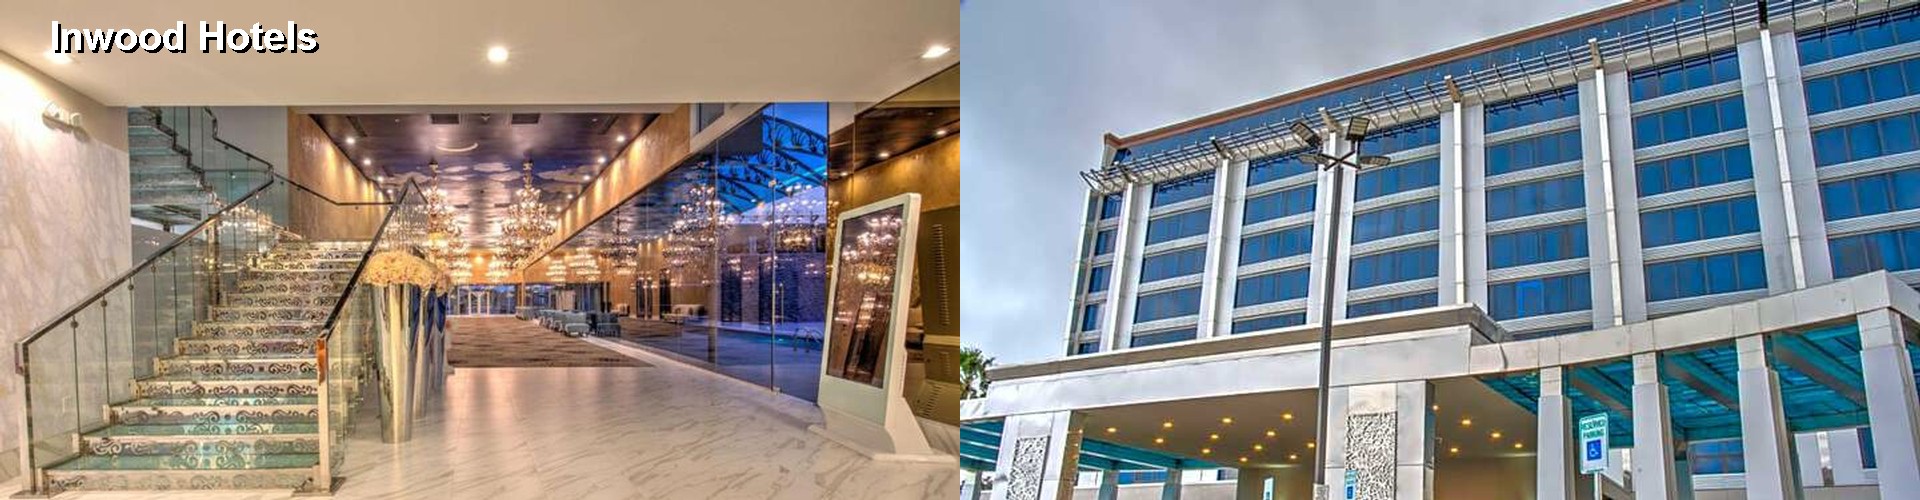 3 Best Hotels near Inwood